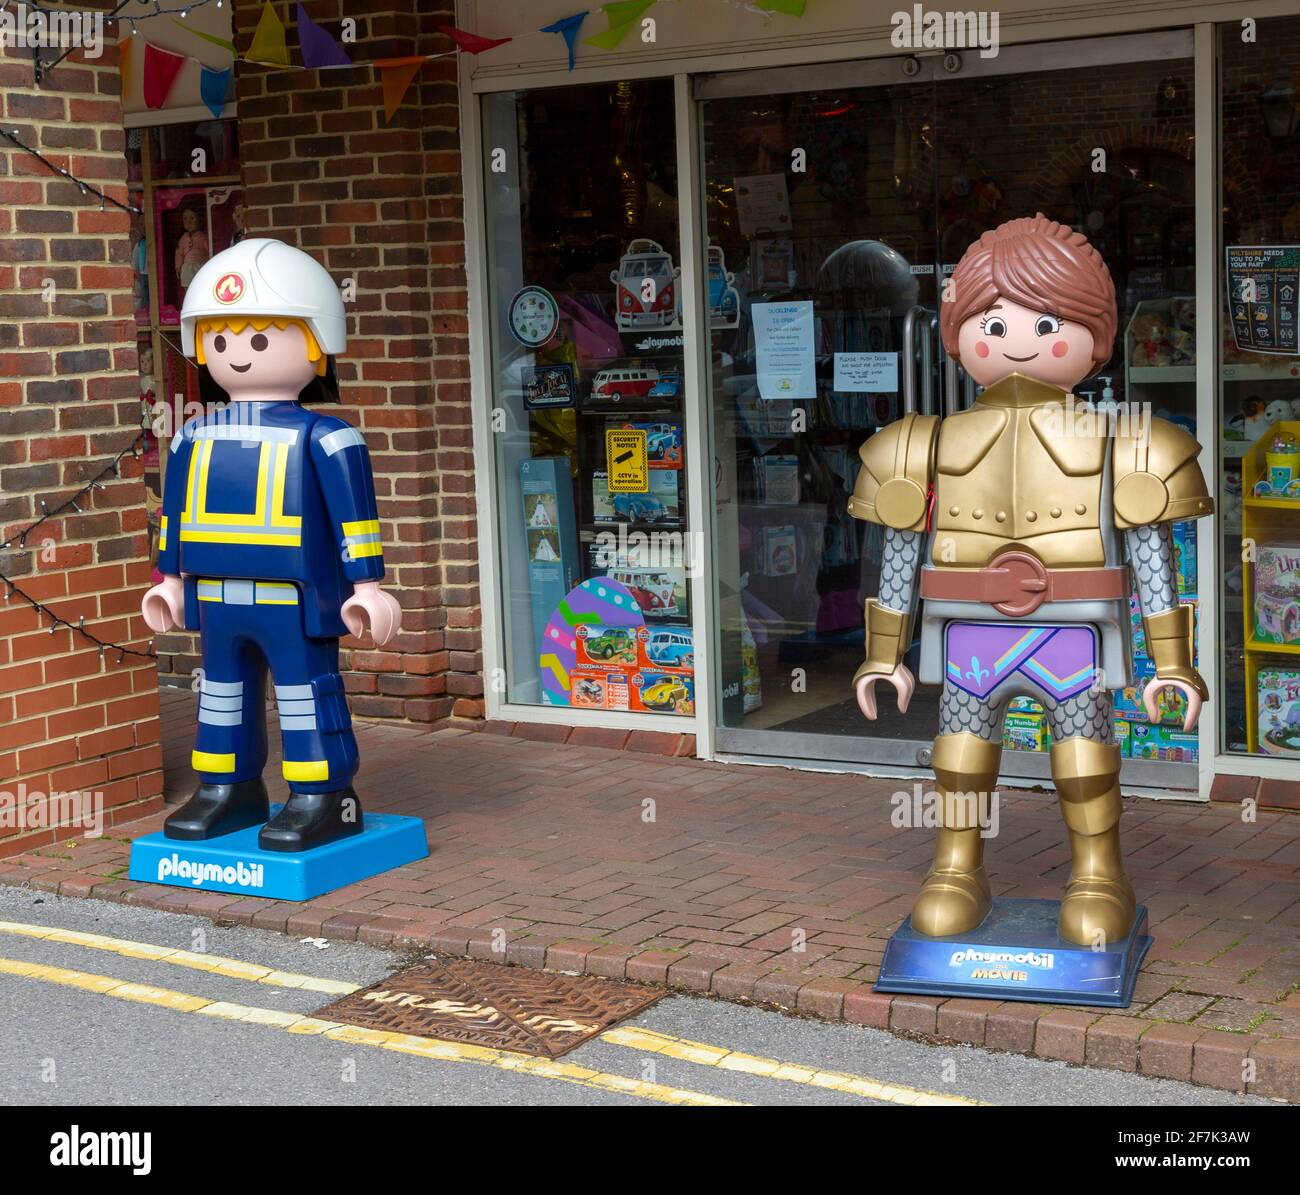 Riesige Playmobil-Charaktermodelle vor dem Spielzeugladen, Marlborough,  Wiltshire, England, Großbritannien Stockfotografie - Alamy